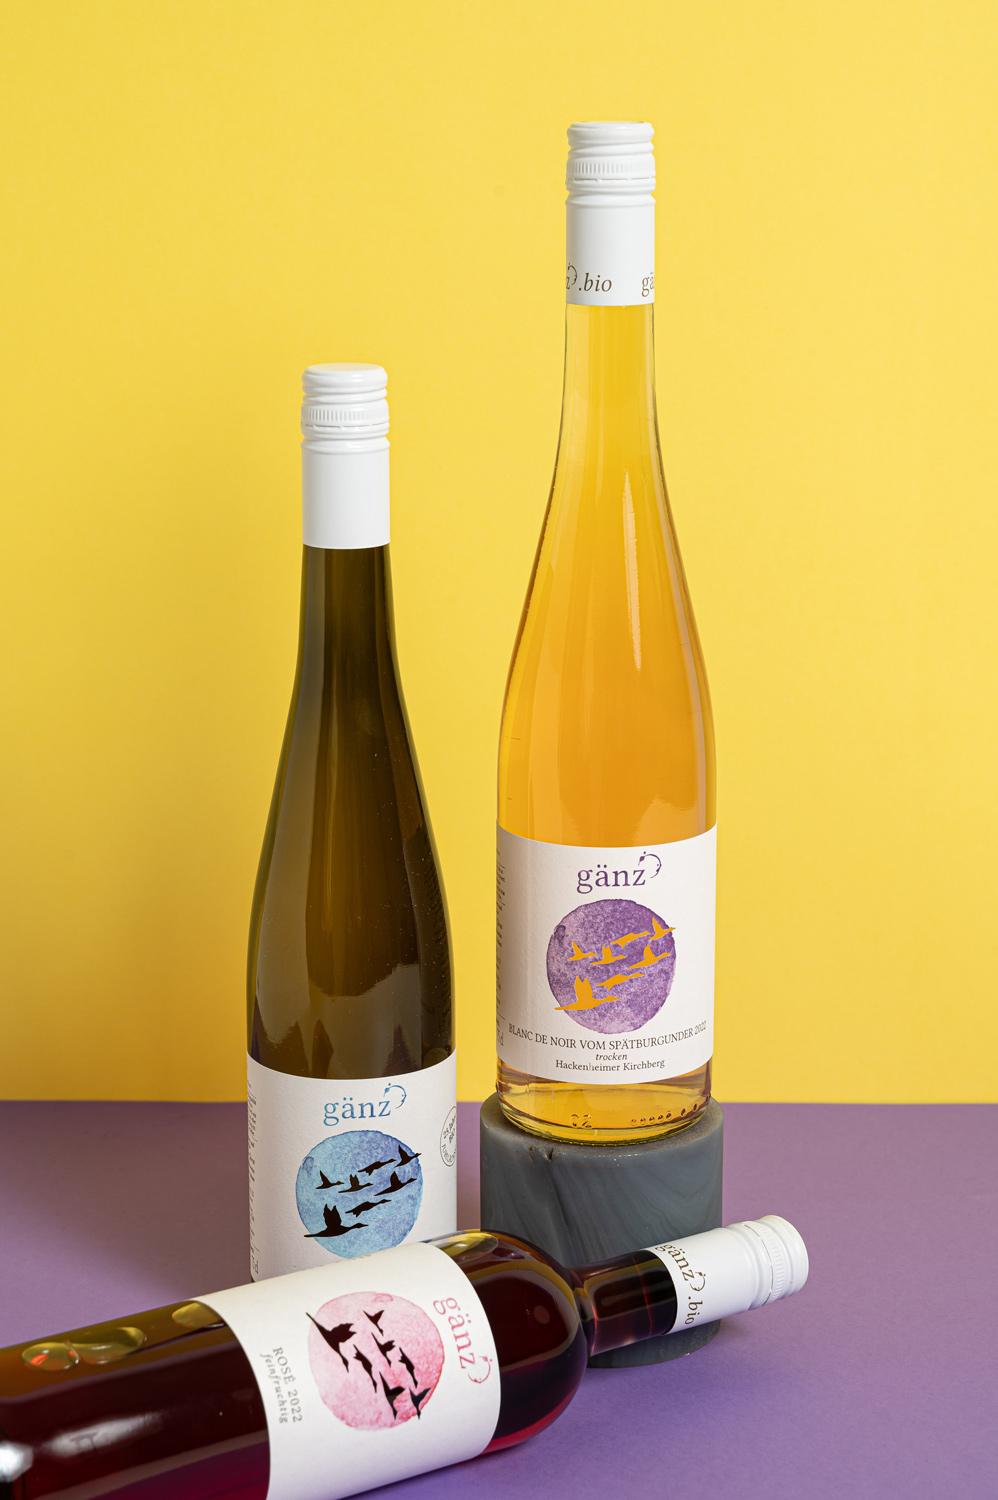 Drei Weinflaschen auf einem lila Untergrund und gelben Hintergrund.